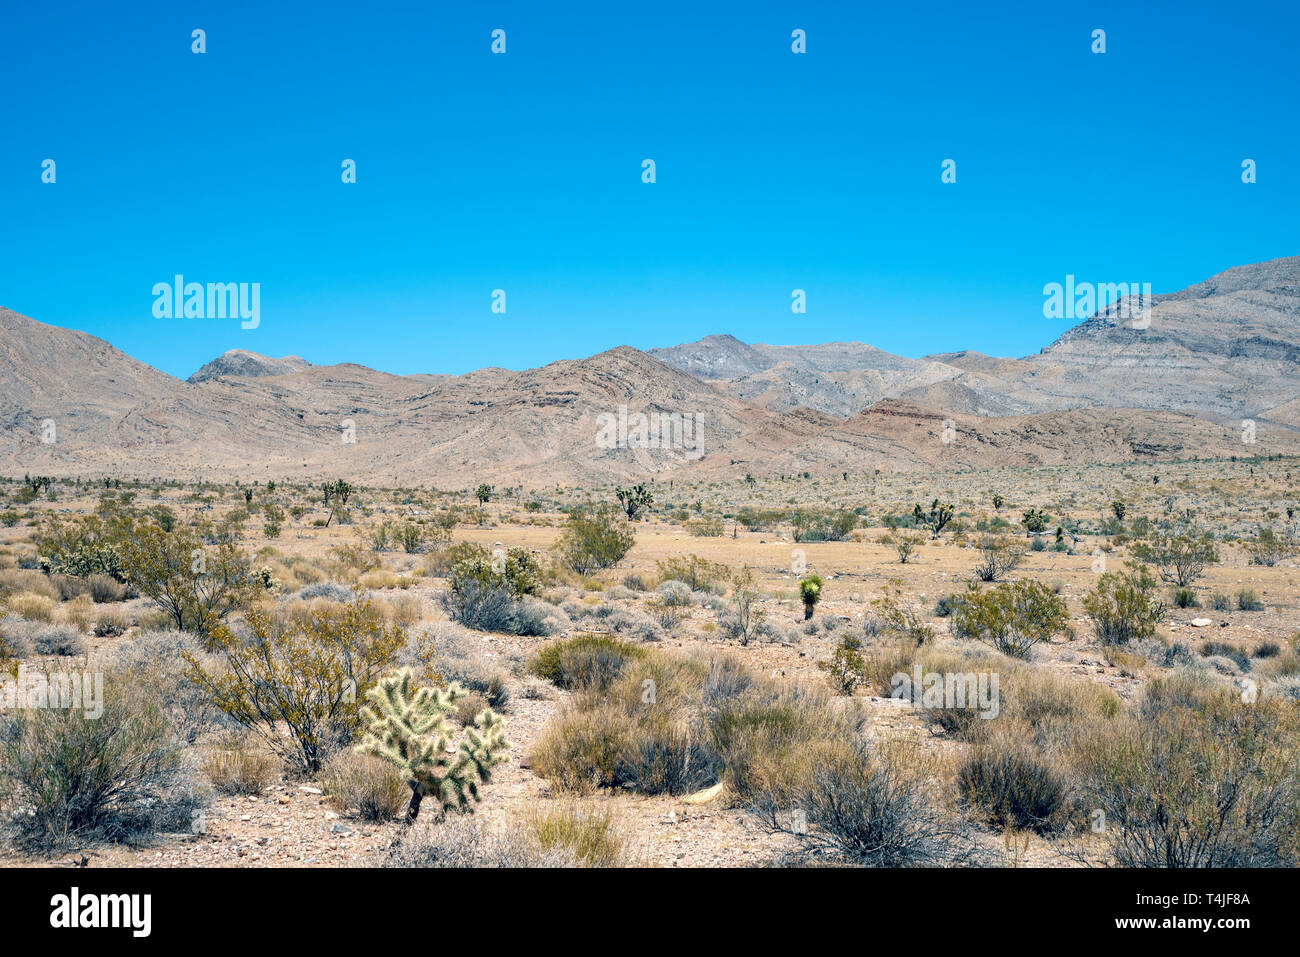 Bruch und Cactus cover die Wüste Landschaft mit kargen Berge unter einem strahlend blauen Himmel. Stockfoto